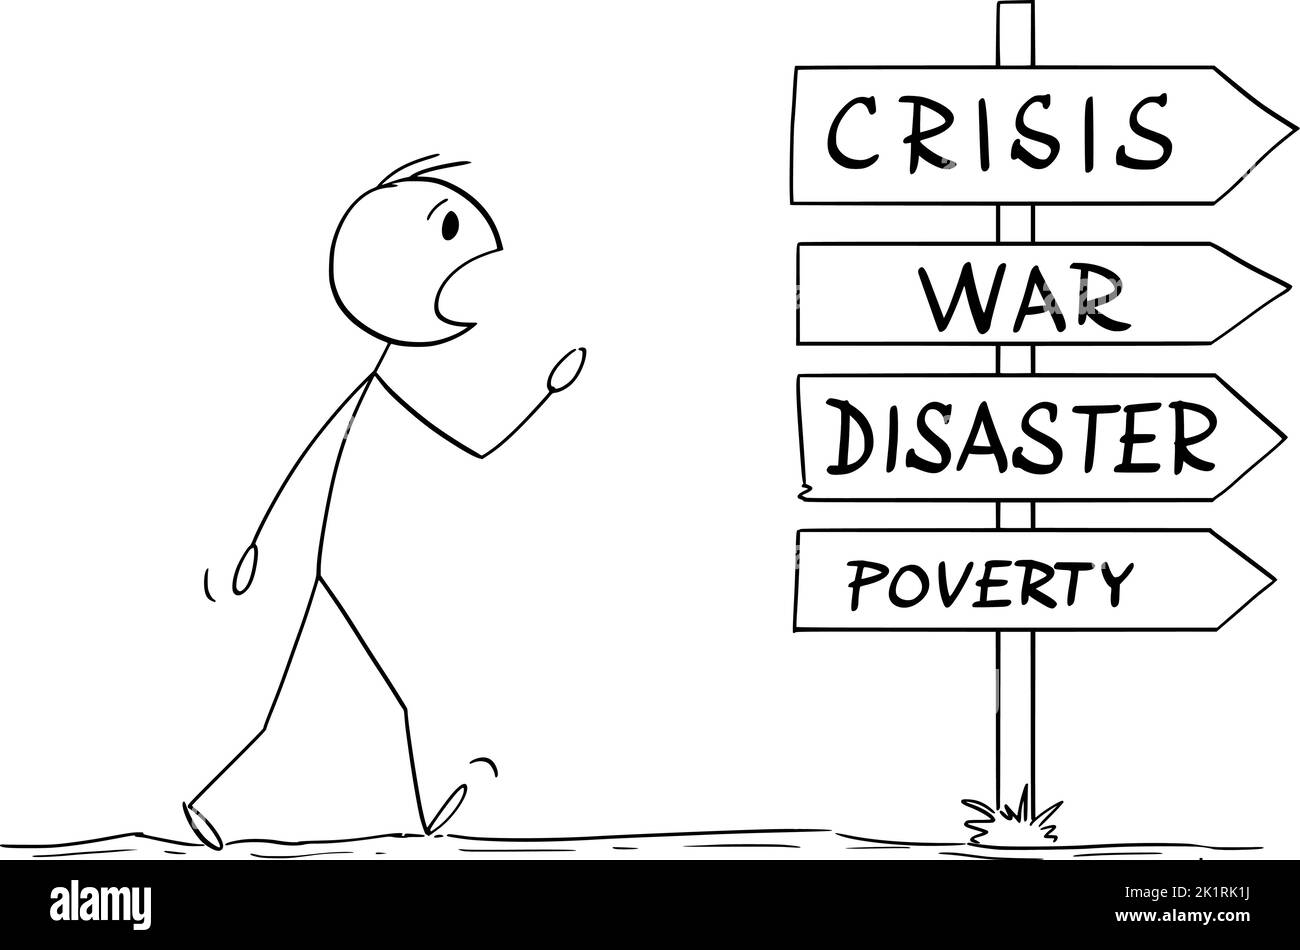 Person, die auf dem Weg in die Zukunft von Krise, Krieg, Katastrophe oder Armut ist, Vektorgrafik Cartoon Stick Figure Illustration Stock Vektor